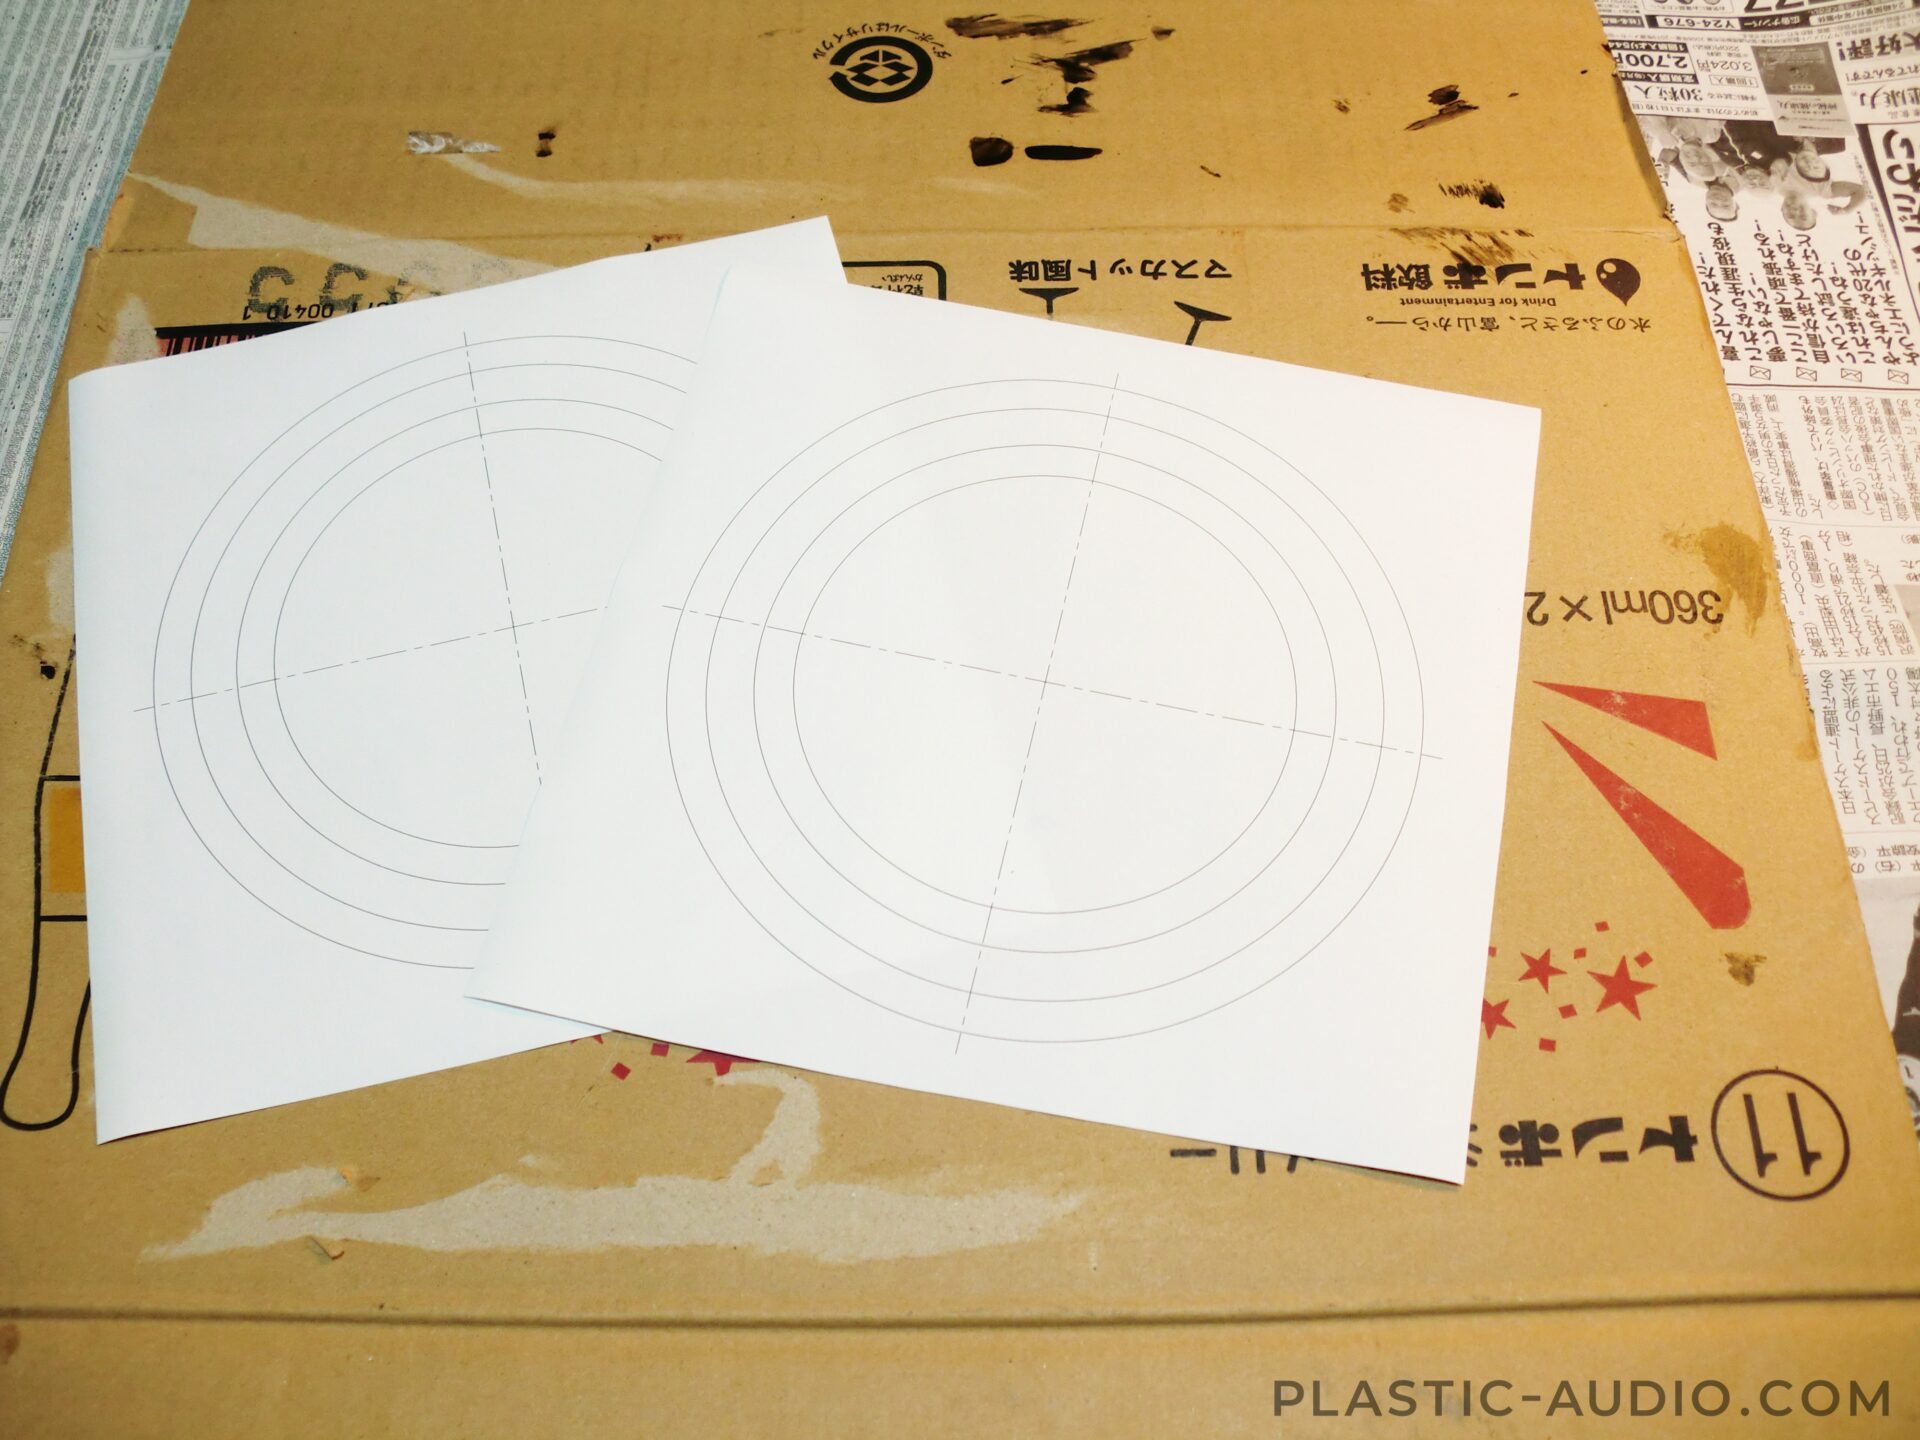 スピーカーのエッジ自作・張り替え | 画像つきで詳細に解説 | Plastic Audio